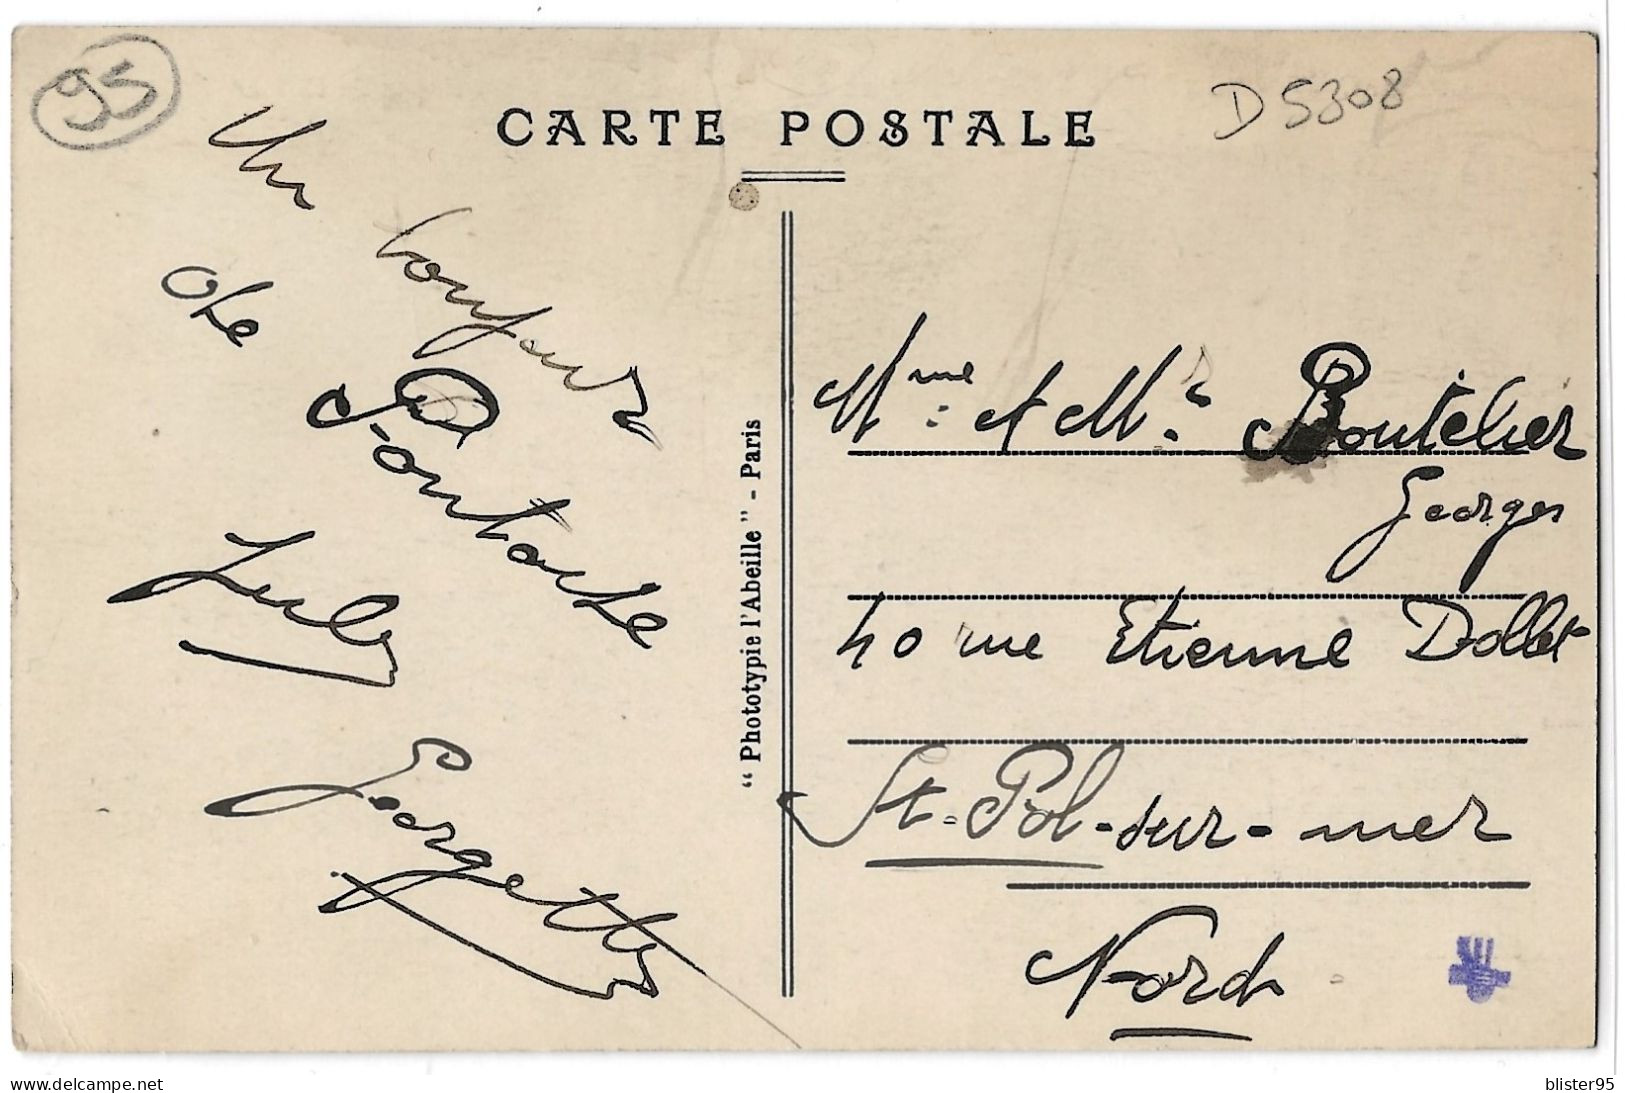 Pontoise (95) , Restaurant Du Barrage , Envoyée En 1935 - Pontoise